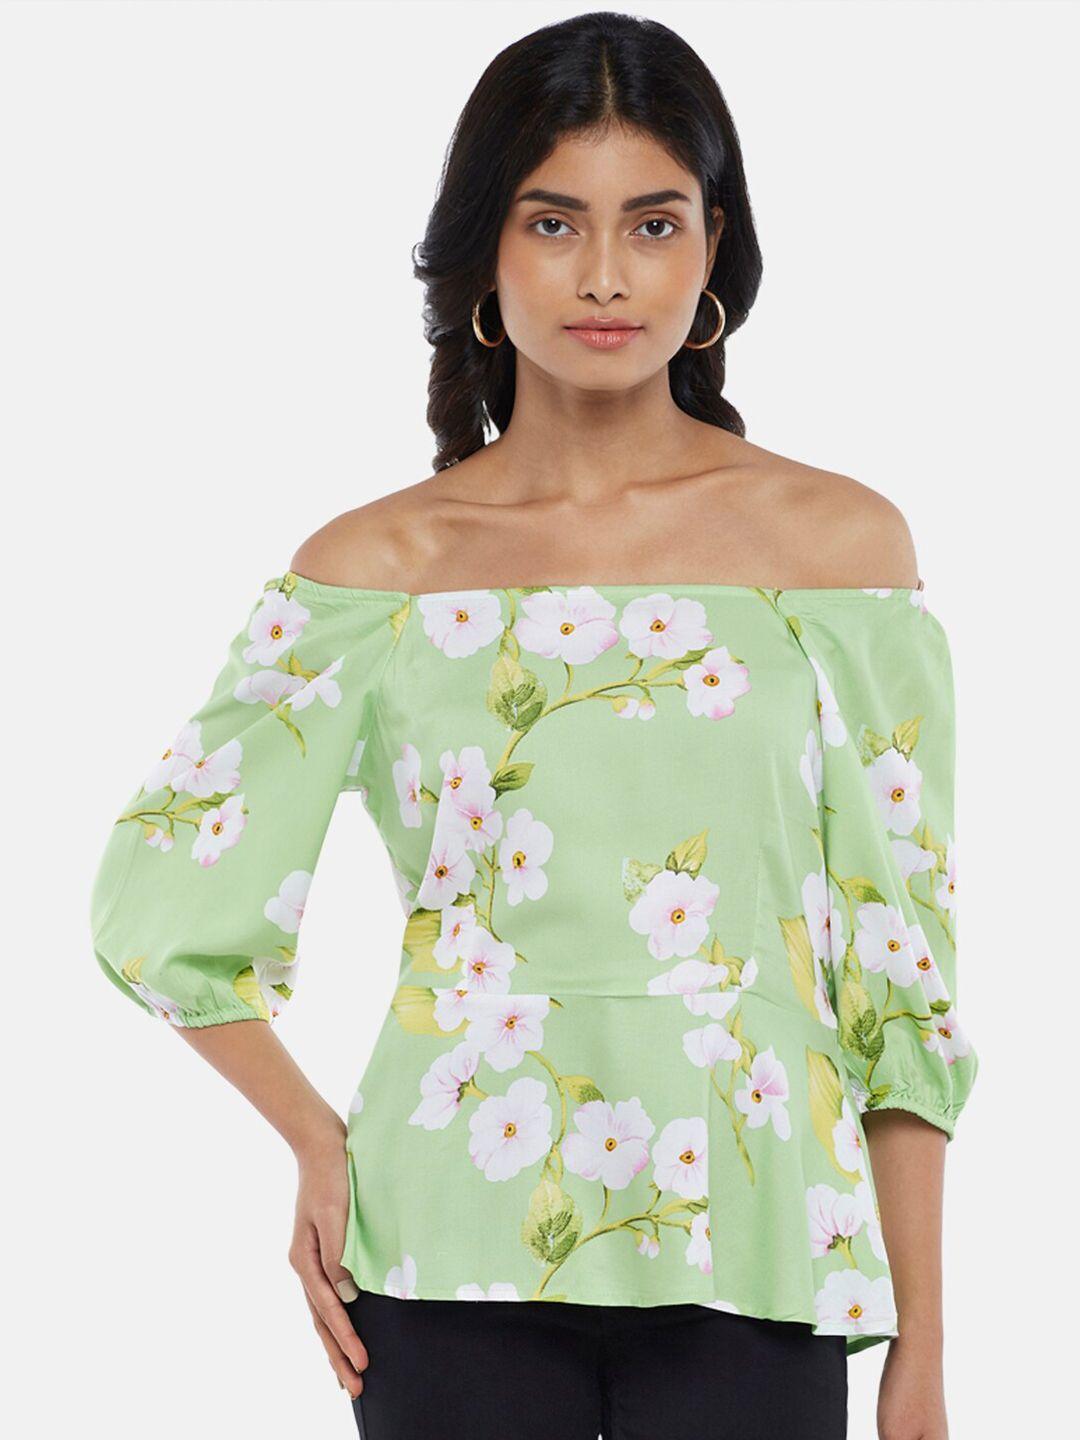 honey by pantaloons green floral print off-shoulder bardot top